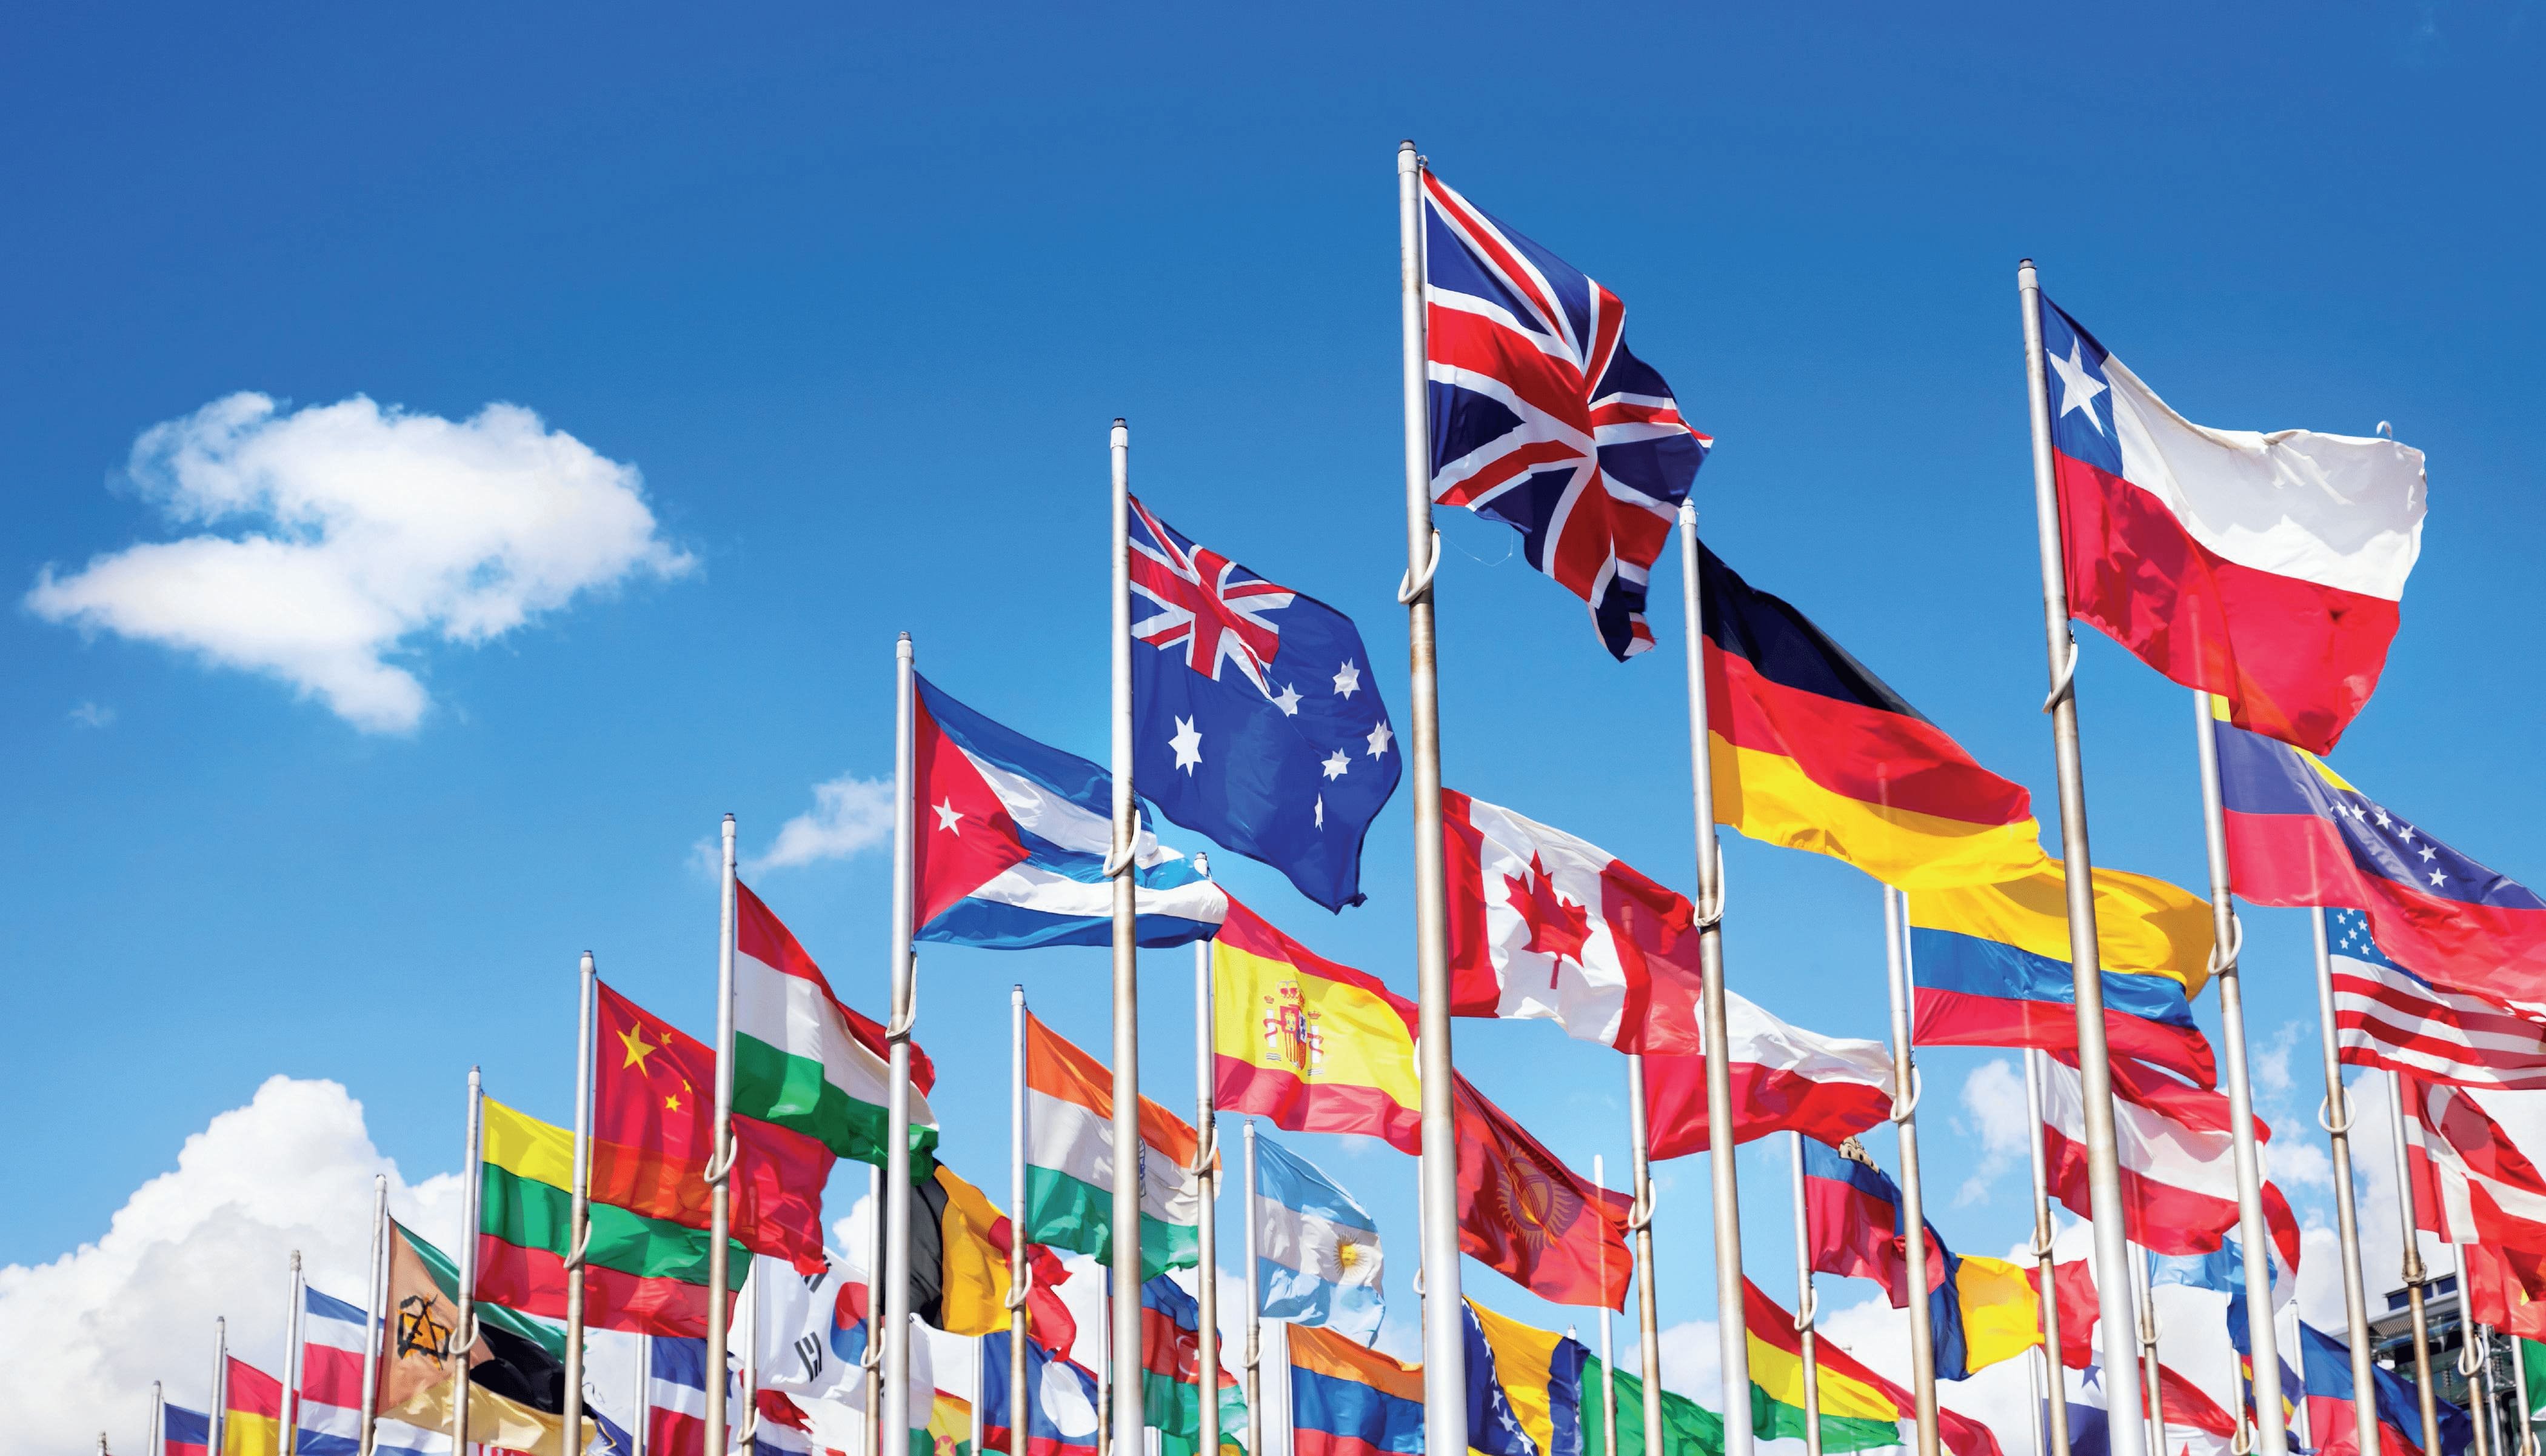 Иностранные организации состоящие. Иностранные государства. Международные отношения. Флаги разных стран. Много флагов разных стран.